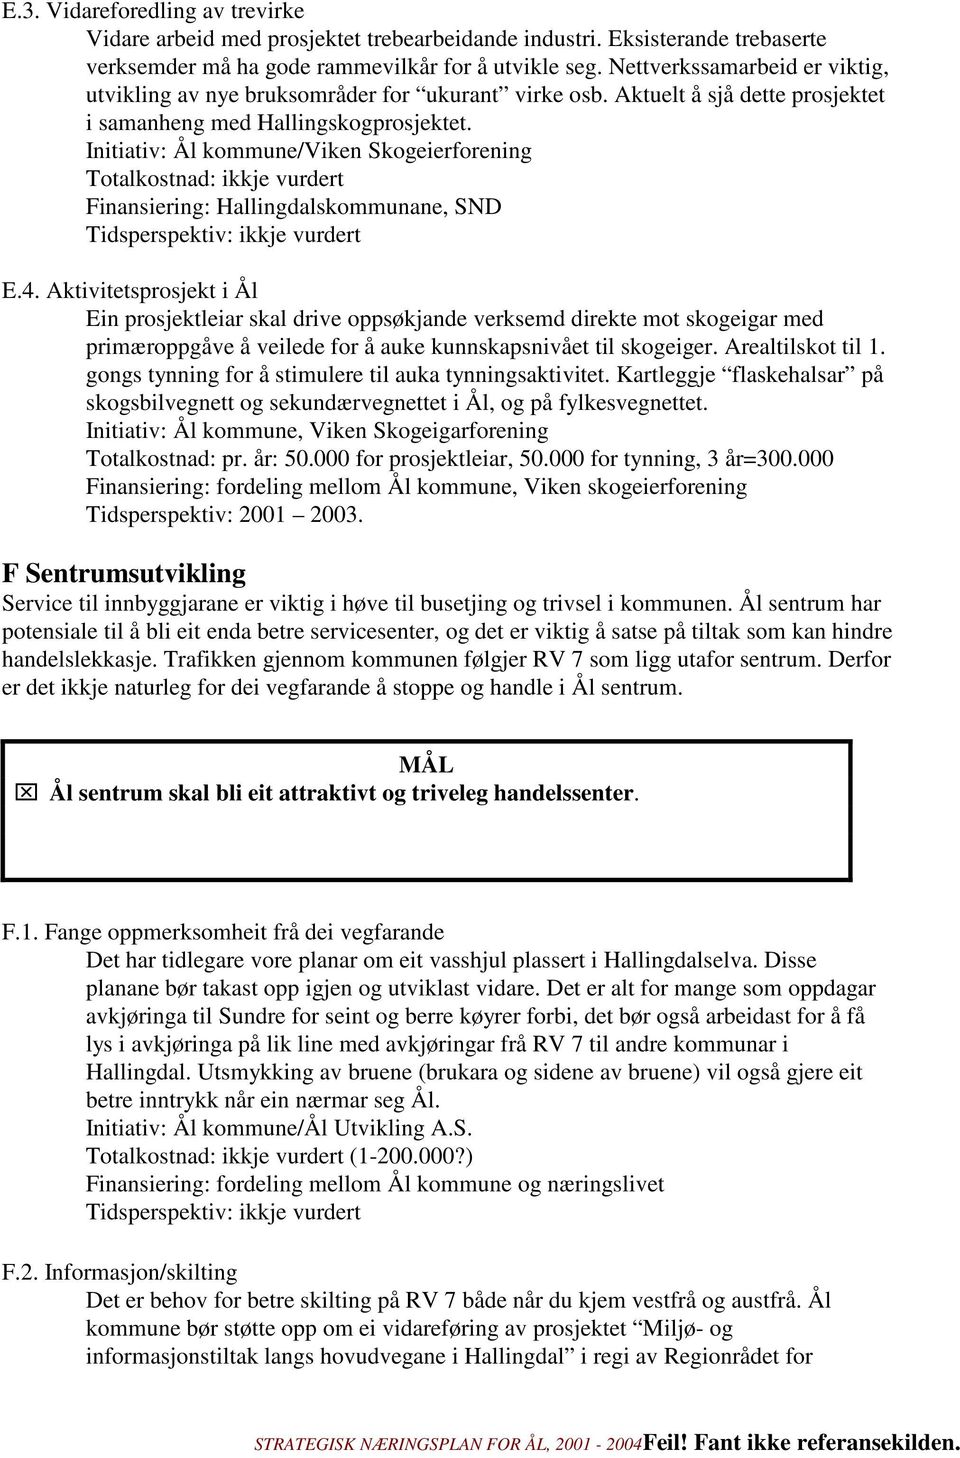 Initiativ: Ål kommune/viken Skogeierforening Finansiering: Hallingdalskommunane, SND Tidsperspektiv: ikkje vurdert E.4.